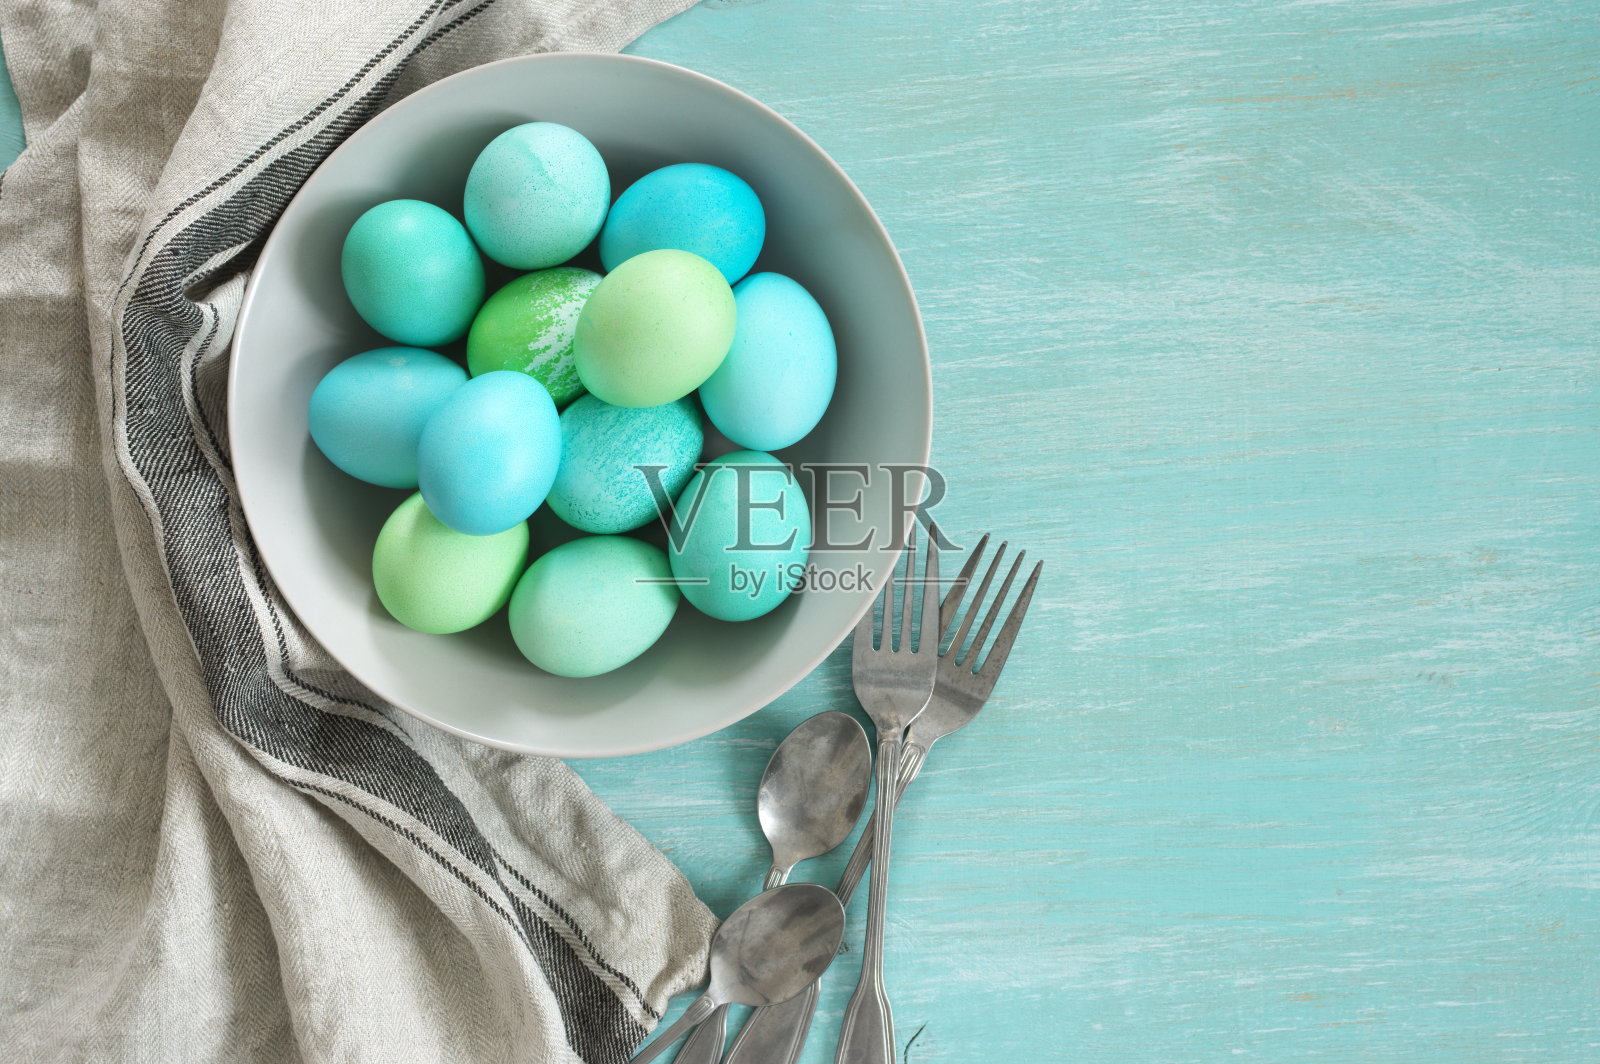 浅蓝色和绿色的复活节彩蛋照片摄影图片